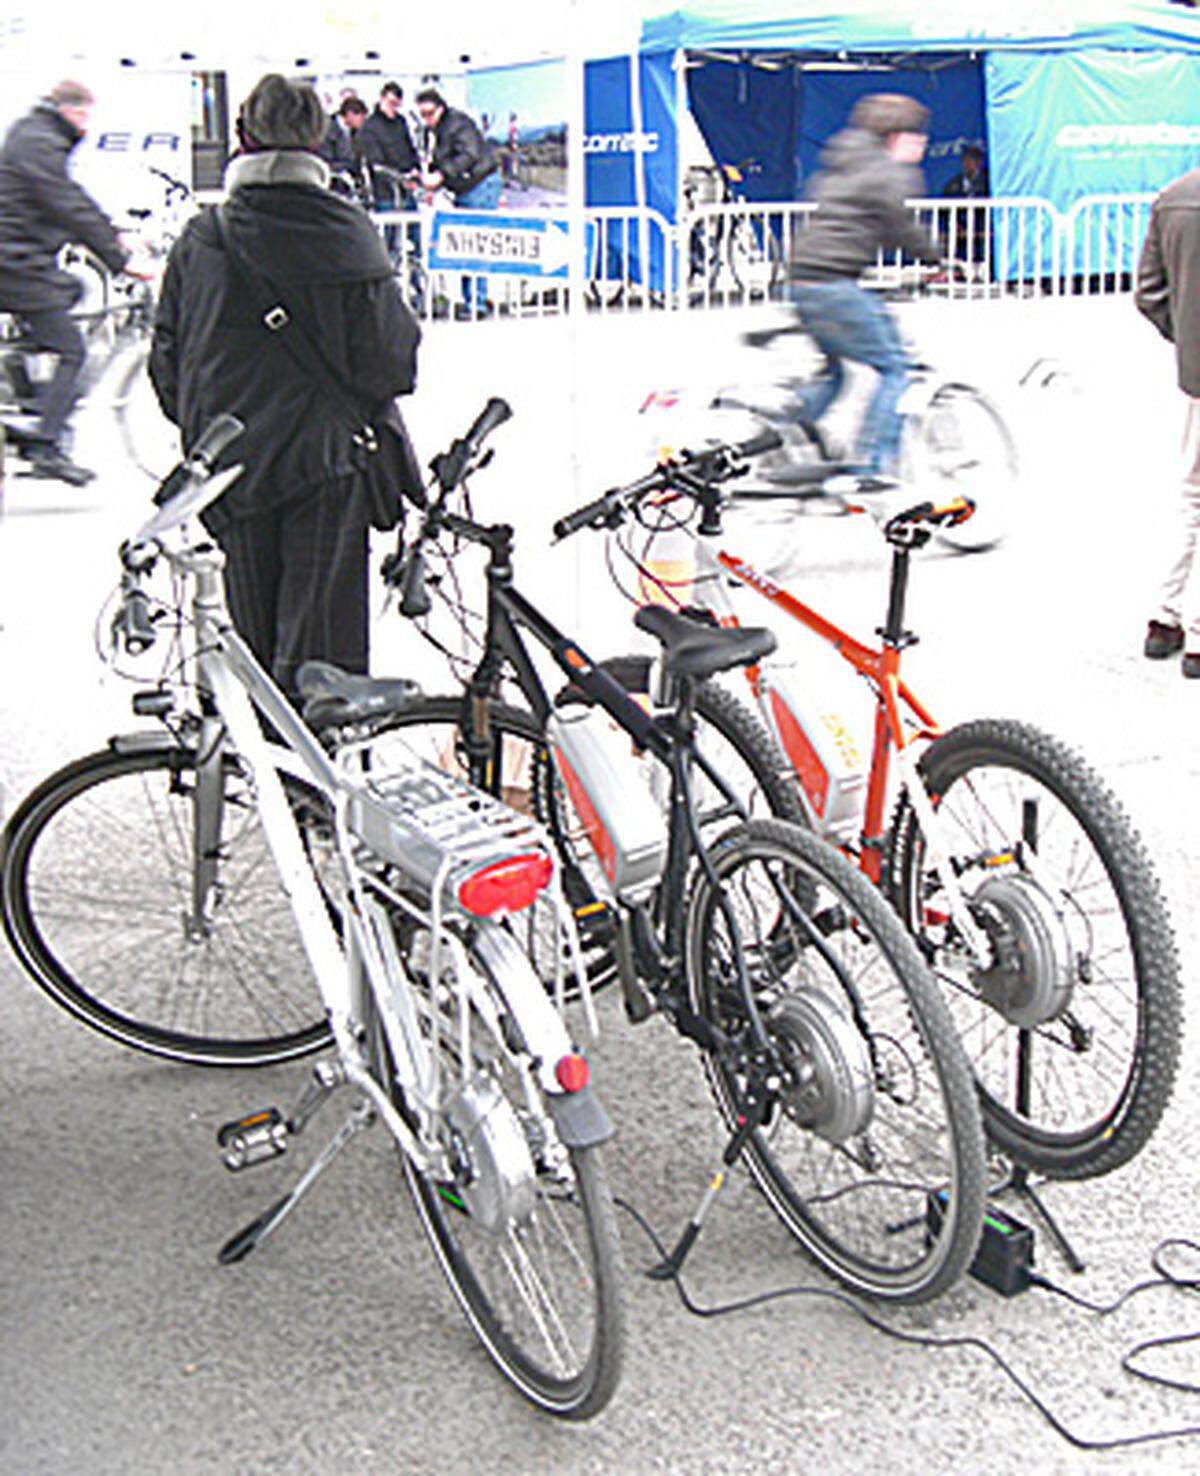 Einen Schwerpunkt bildete heuer das Elektro-Fahrrad mit Modell-Neuheiten und Infos über die Förderungen der Stadt Wien.